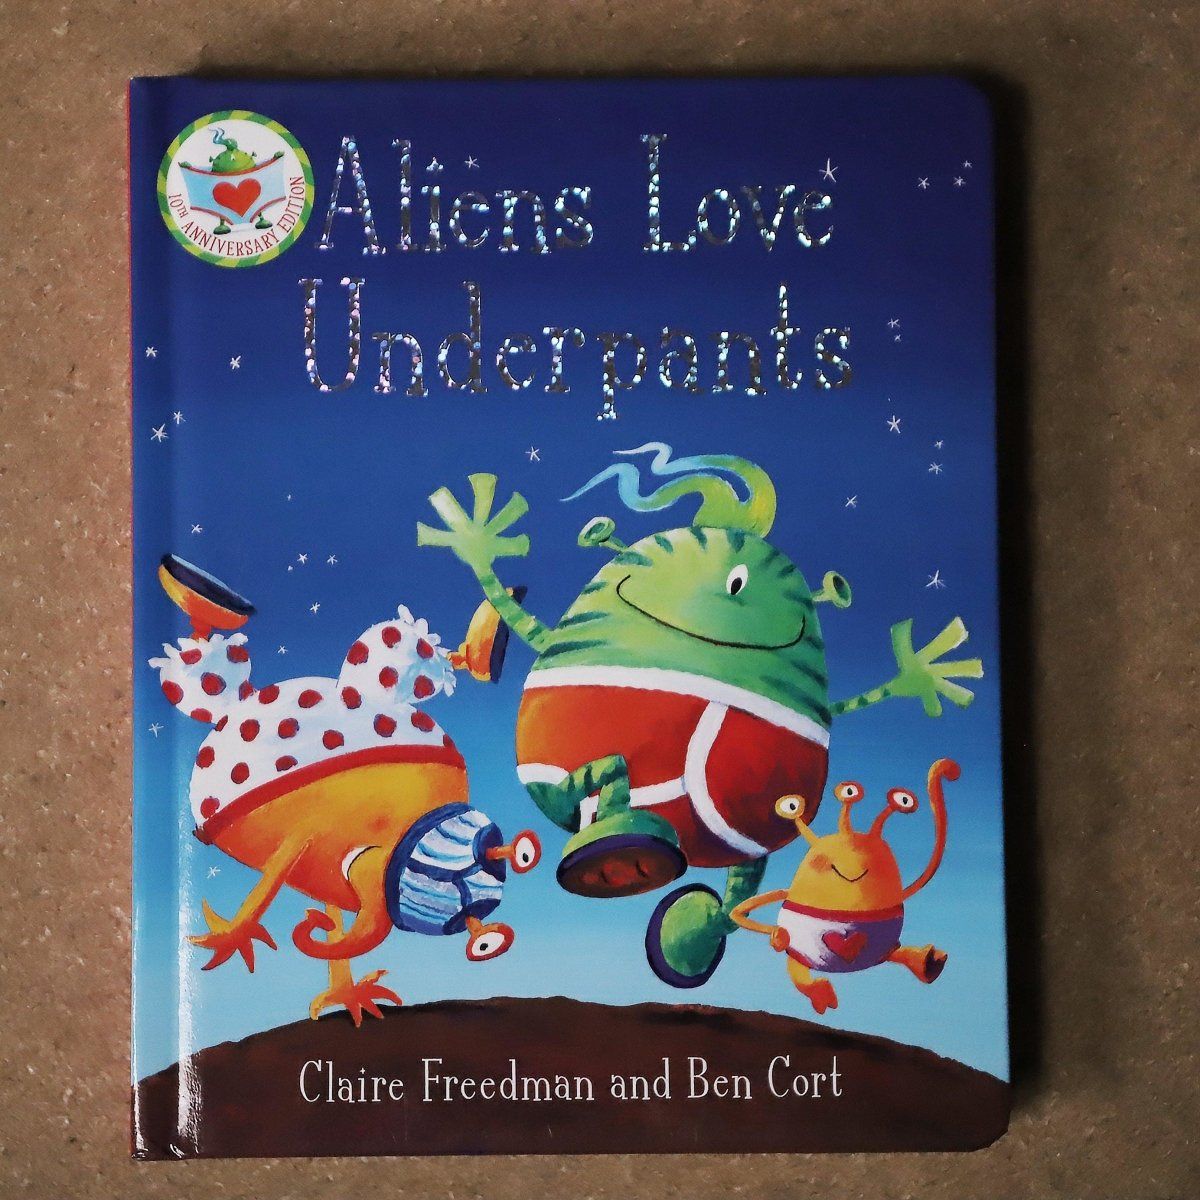 Aliens Love Underpants! (Board book)